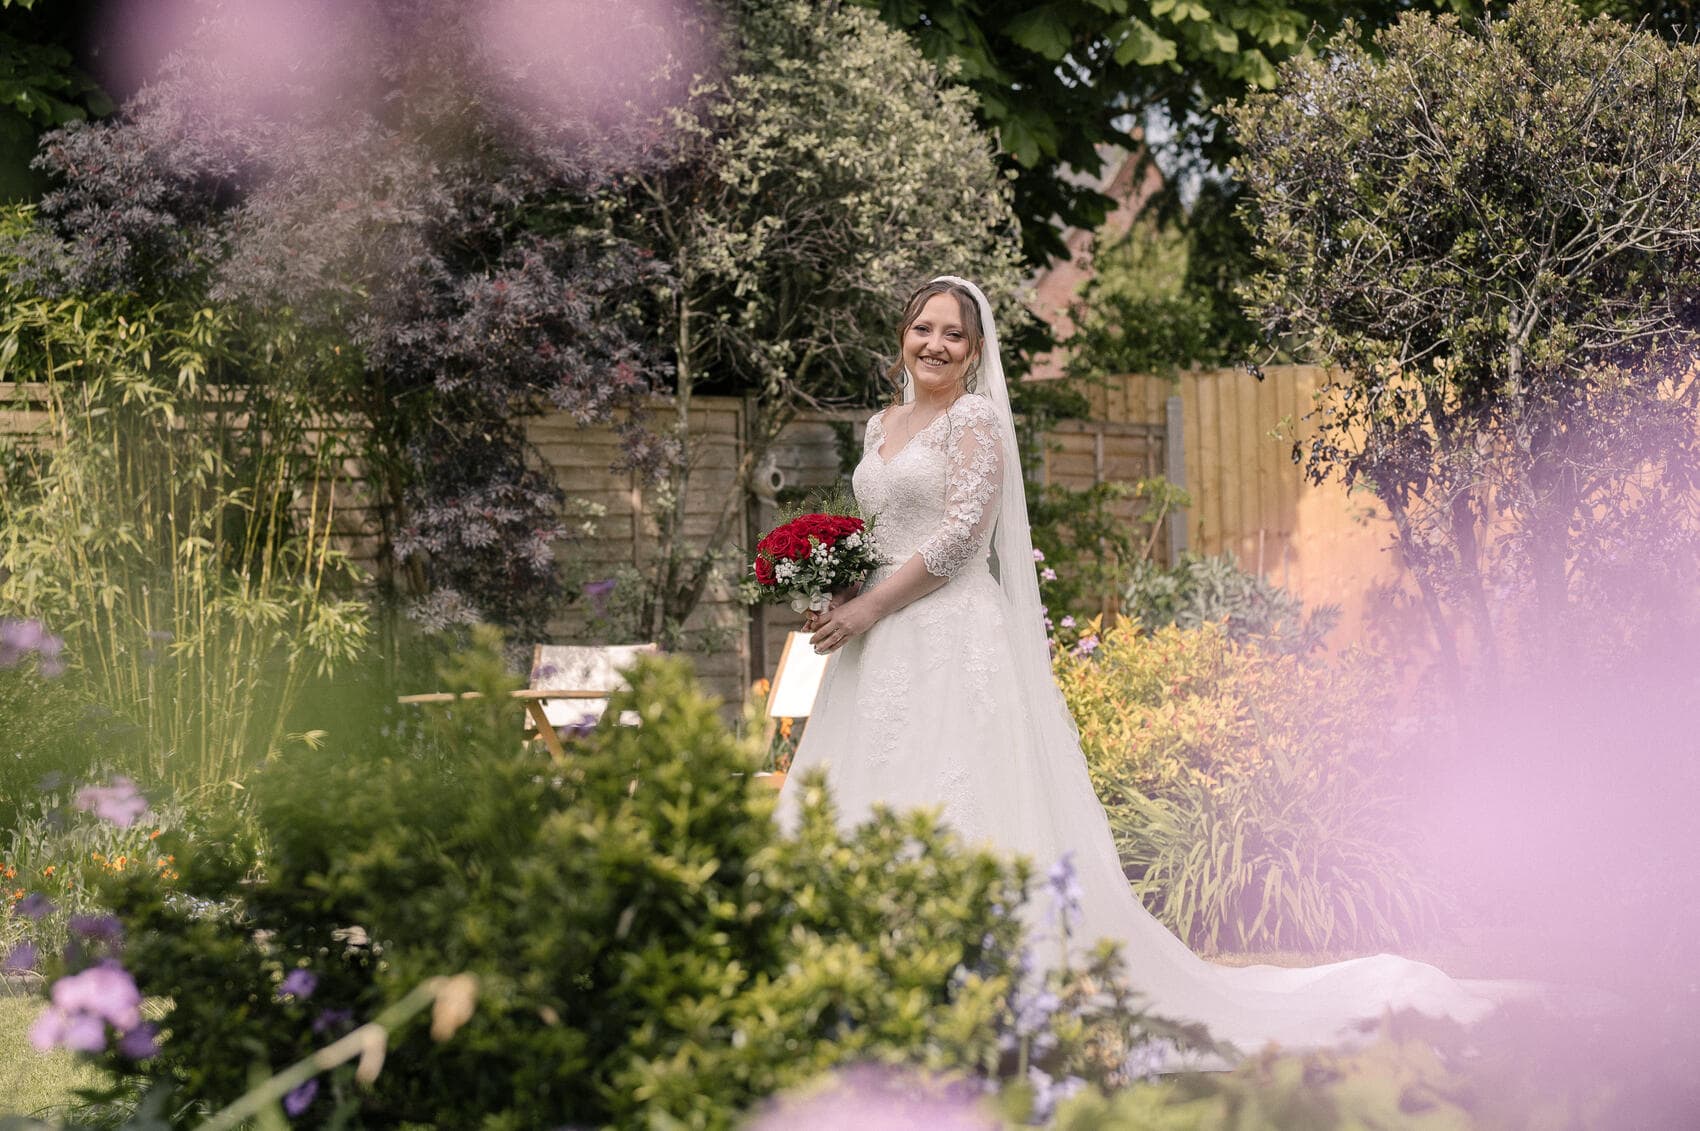 Bride in her garden at Highcliffe castle wedding